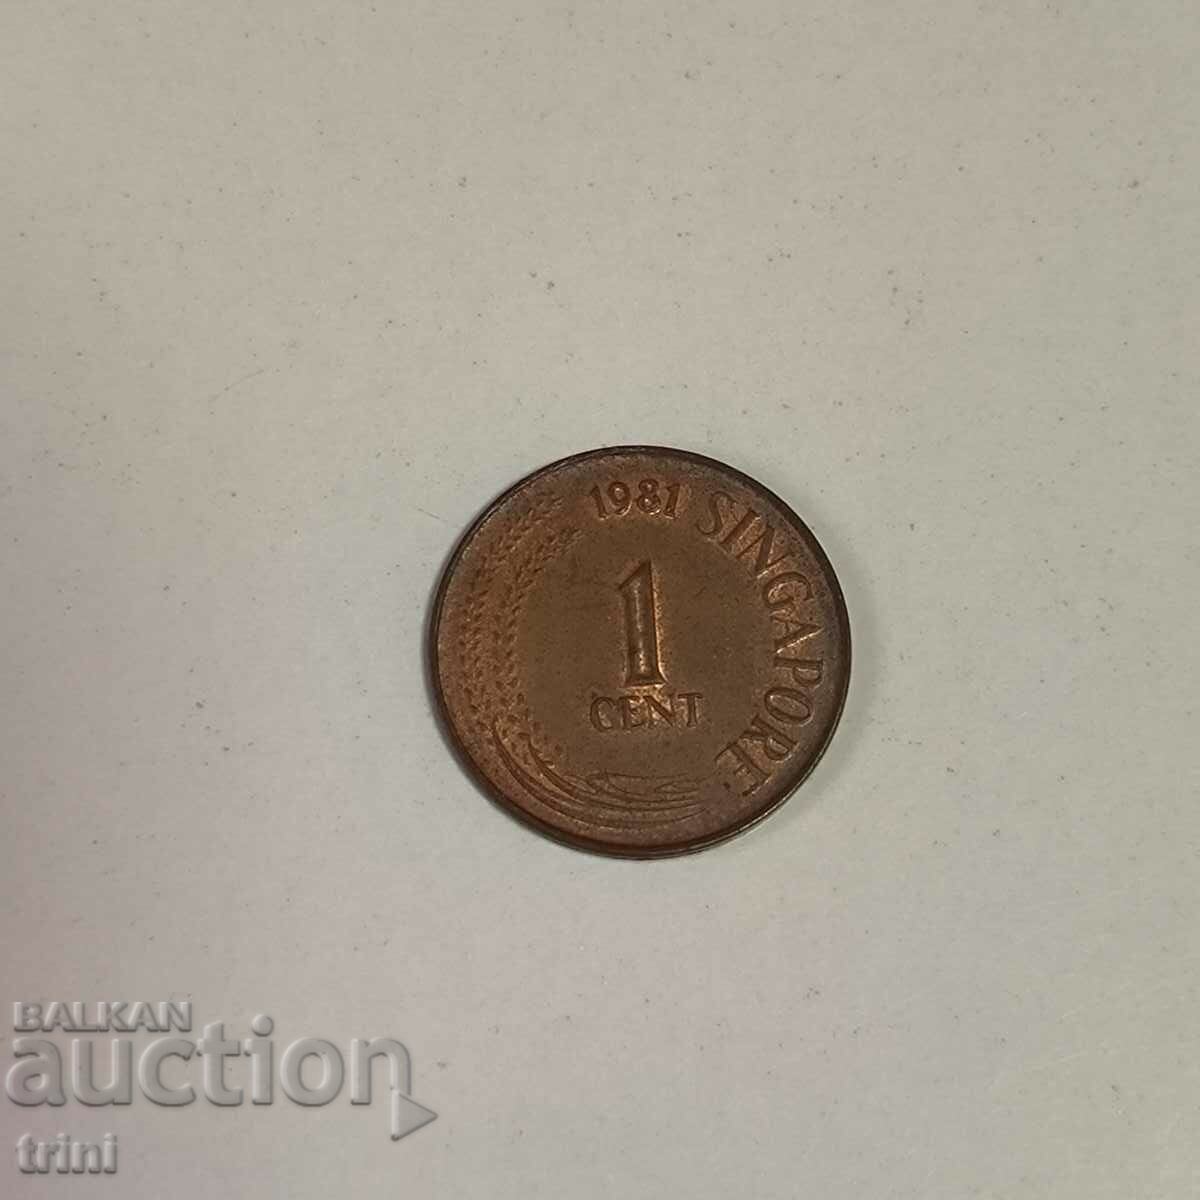 Singapore 1 cent 1981 anul g66